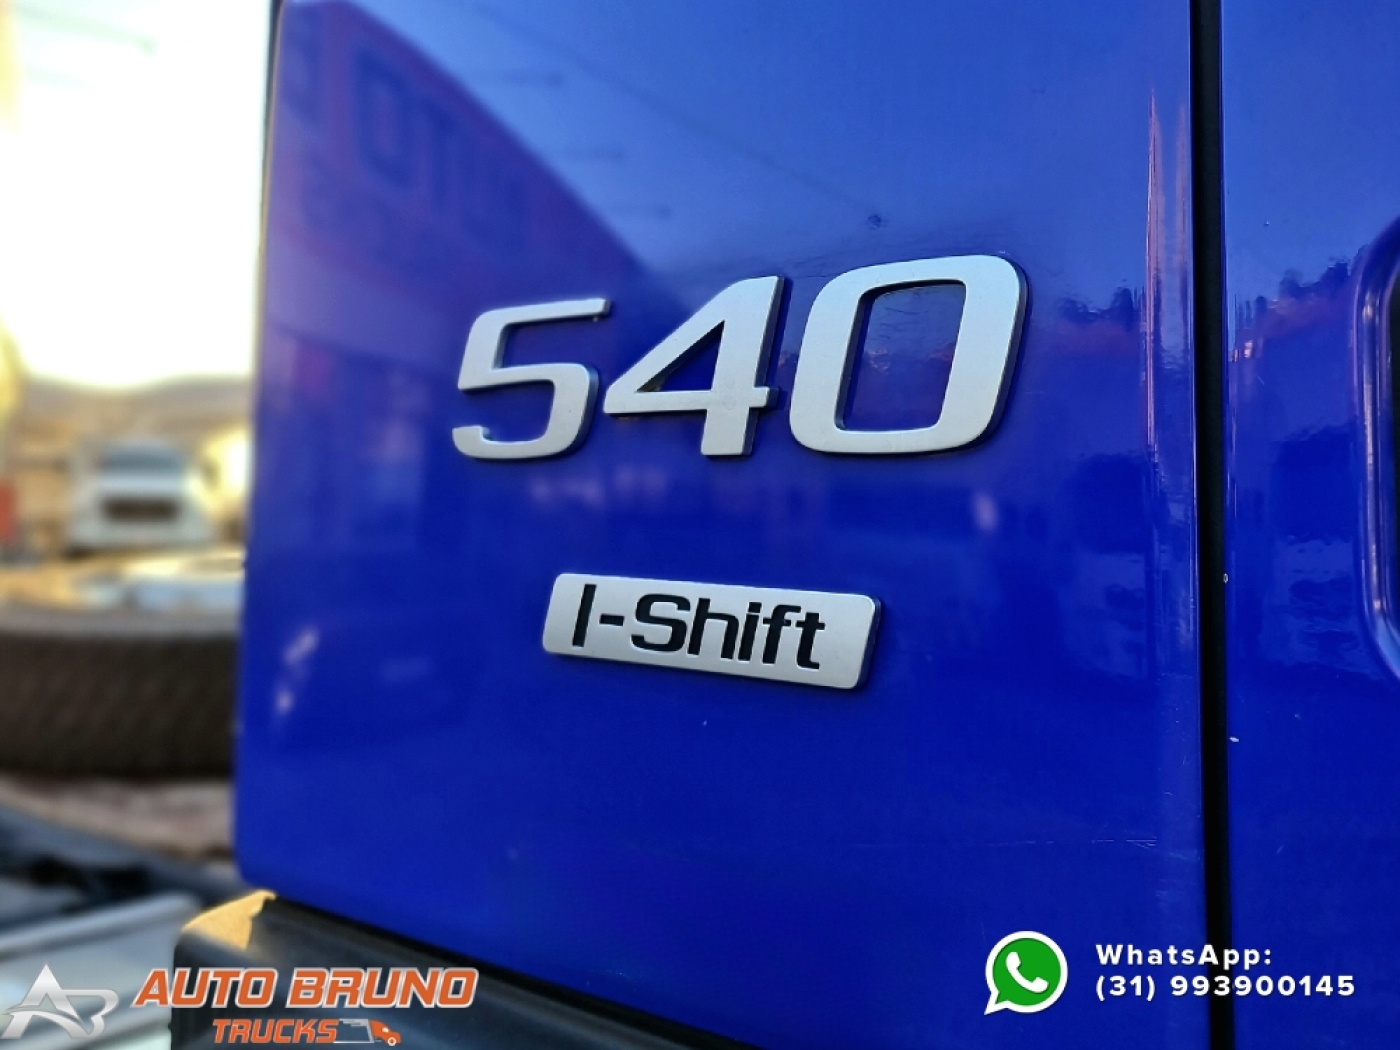 Volvo Fmx 540 6x4, Câmbio I-shift, Ar Condicionado - Caminhões